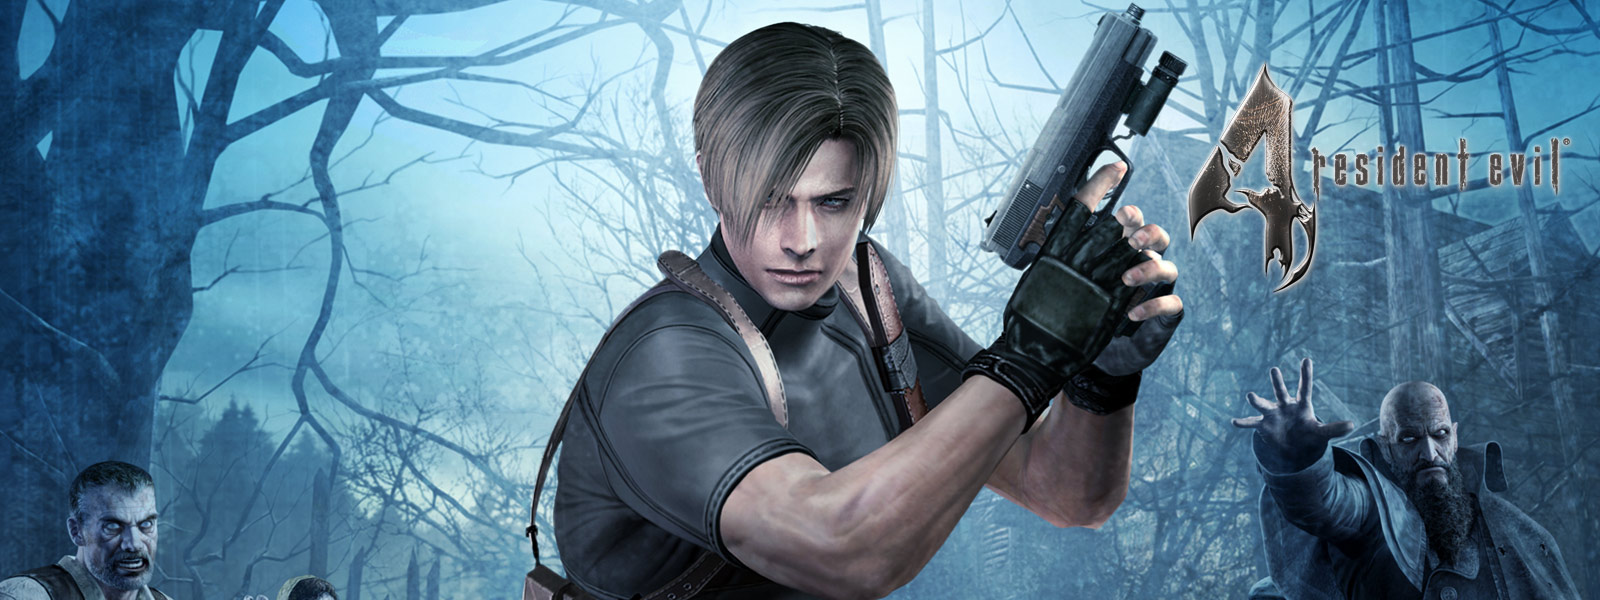 Resident Evil 4, zombien ympäröimä pistoolilla aseistautunut hahmo synkässä metsässä